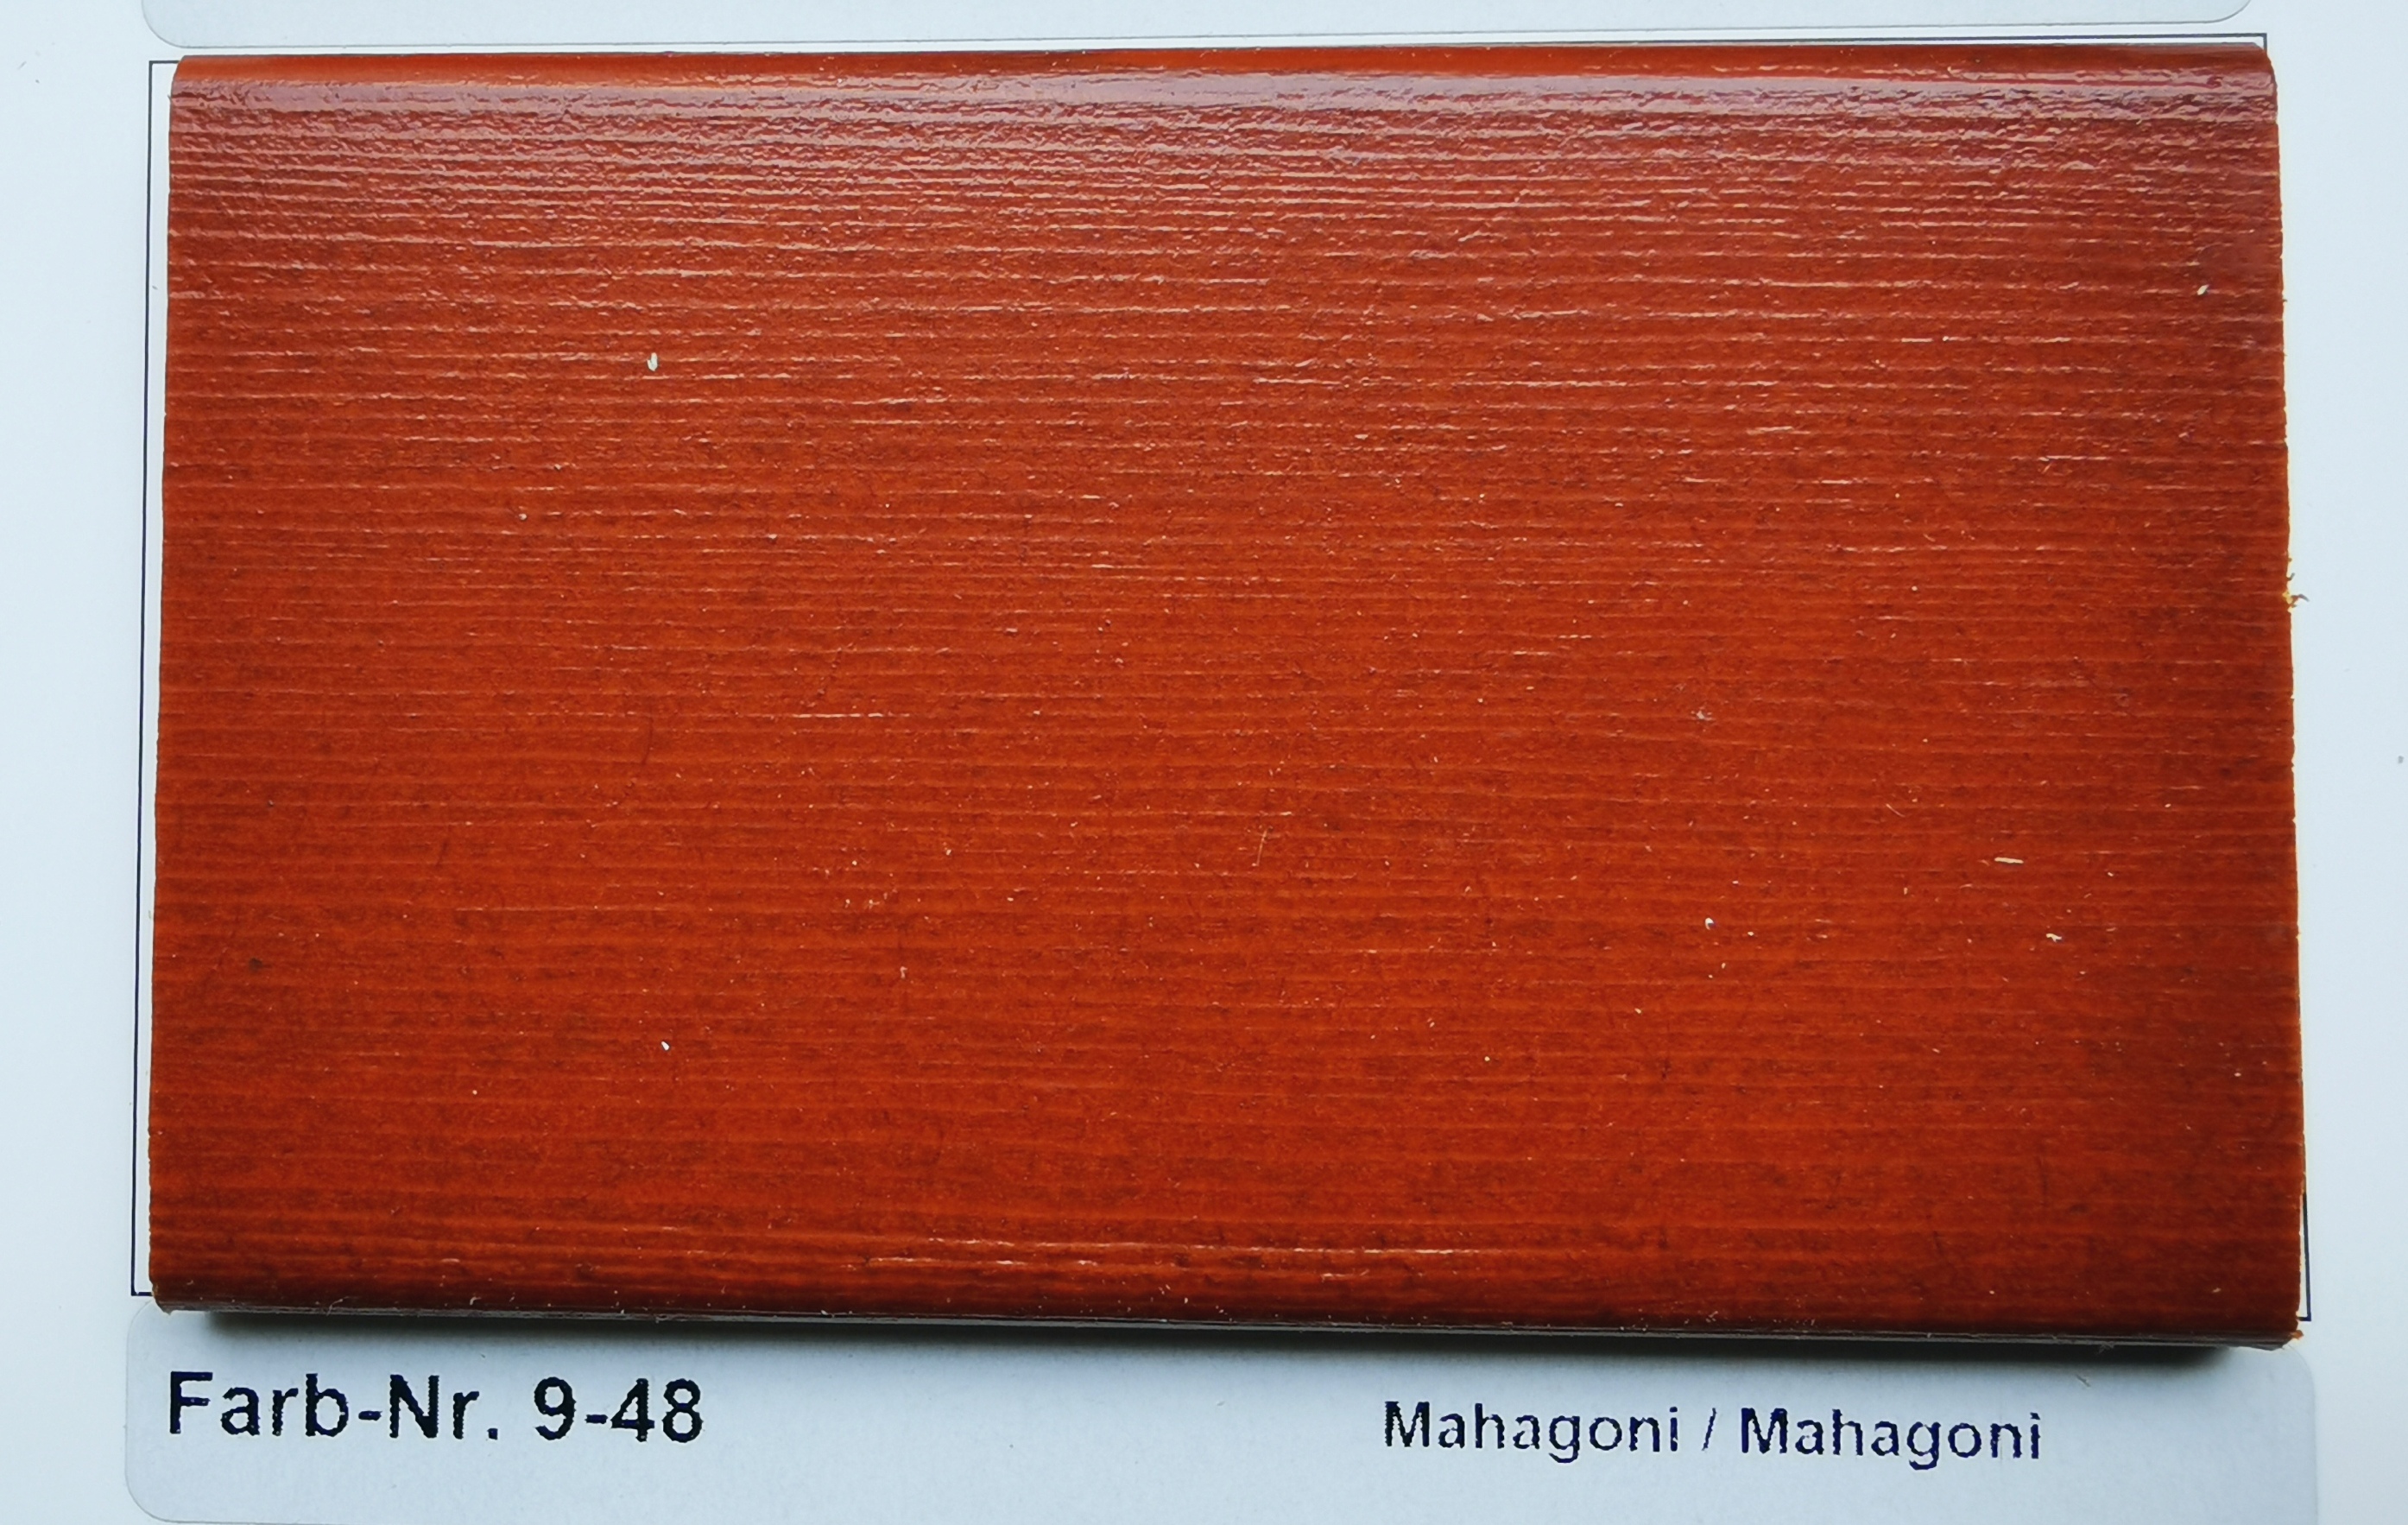 Farb-Nr. 9-48 Mahagoni / Mahagoni hell